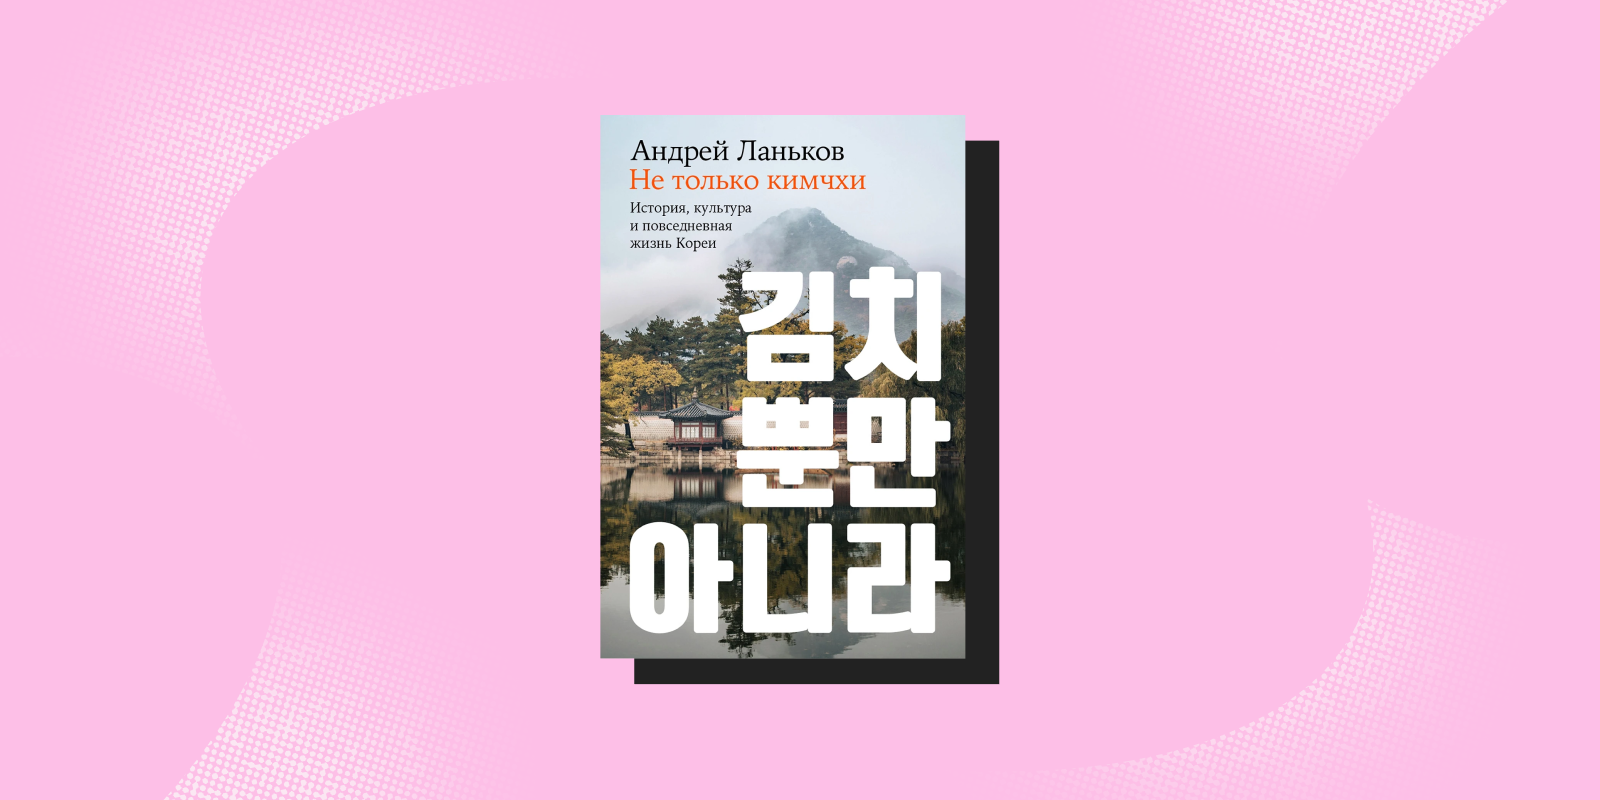 «Не только кимчхи: история, культура и повседневная жизнь Кореи», Андрей Ланьков